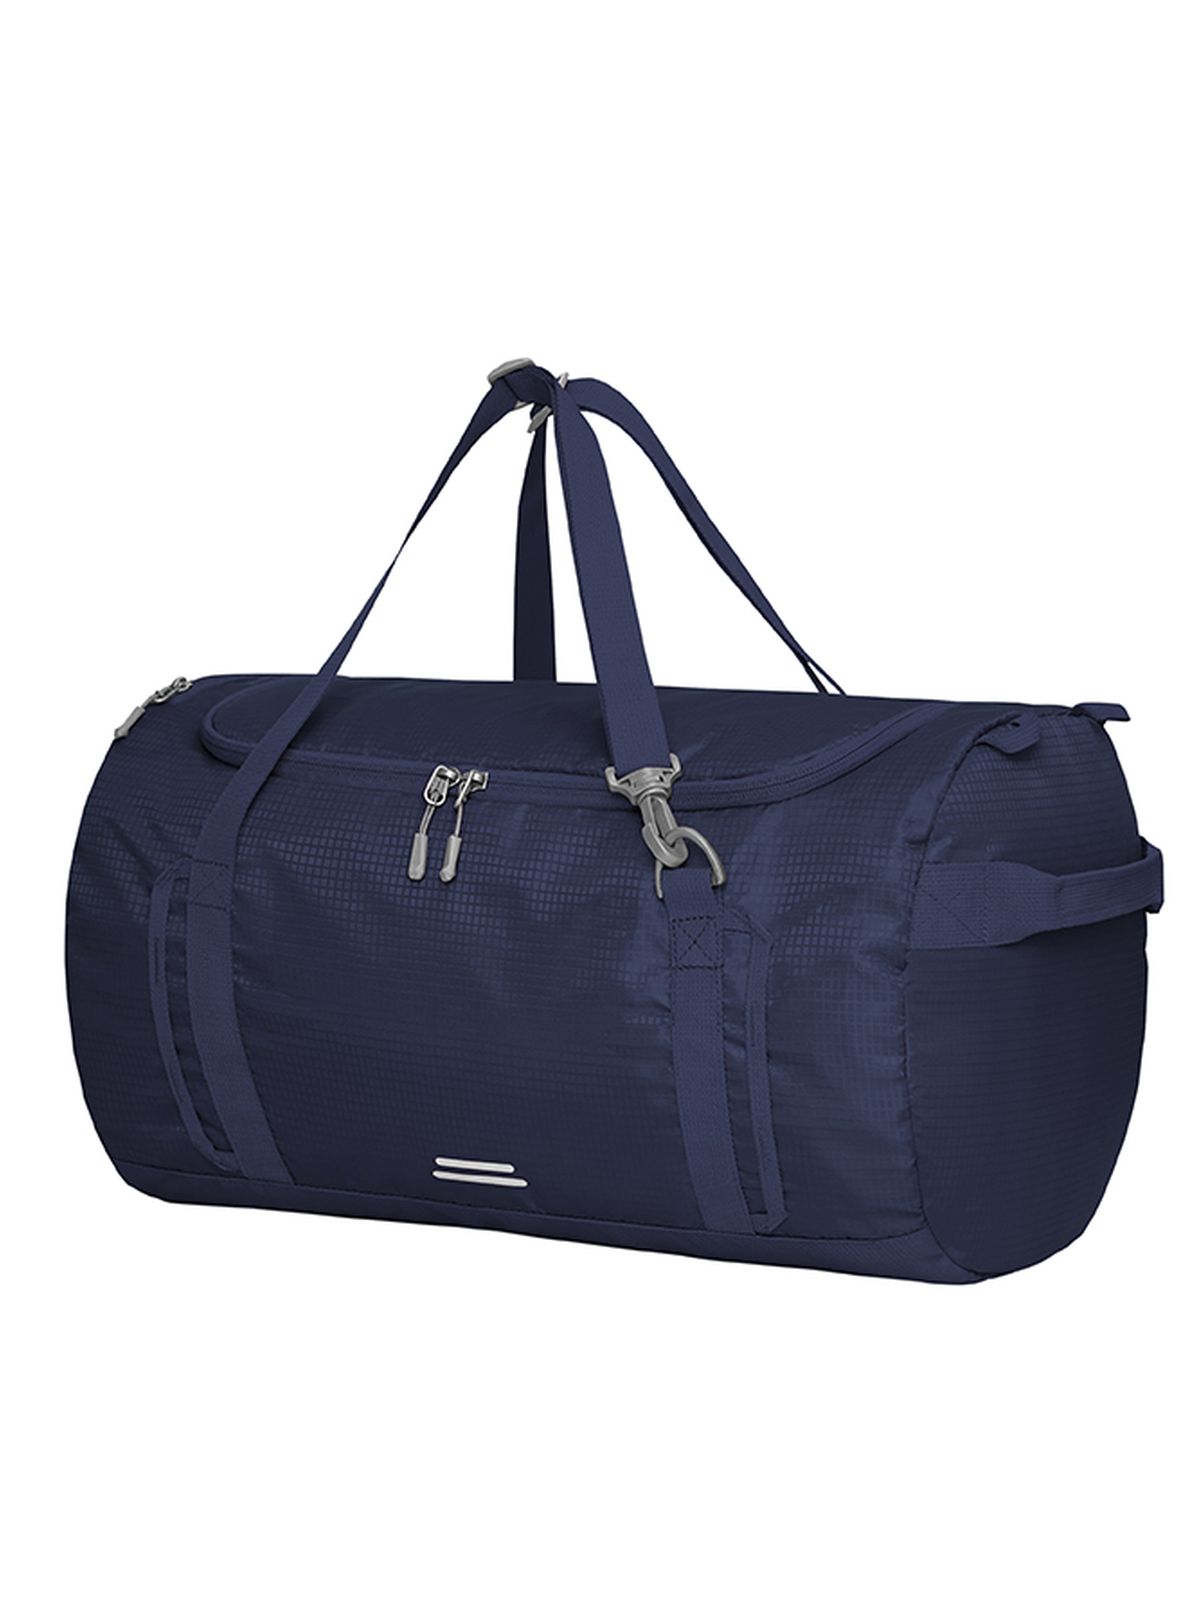 sports-bag-outdoor-navy.webp